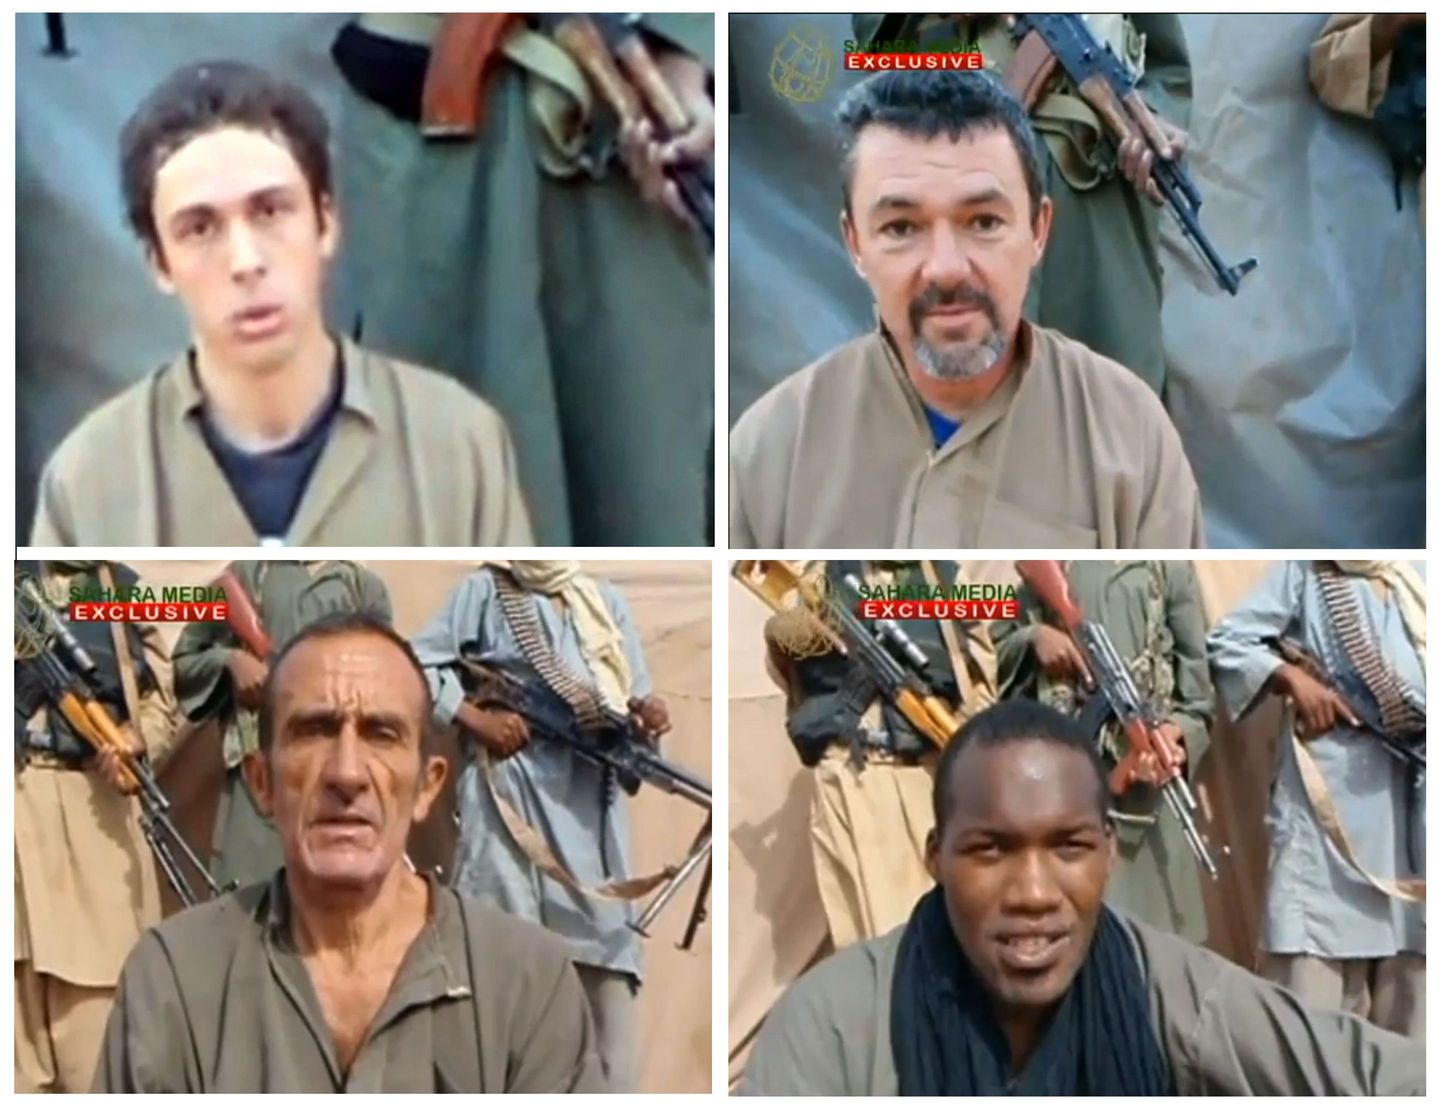 Pildil neli Al-Qaeda Põhja-Aafrika haru käes vangis olevast kuuest prantsuse pantvangist. Pierre Legrand, Marc Feret, Daniel Larribe ja Thierry Dole rööviti ja vangistati 2010. aasta sügisel Nigeris.